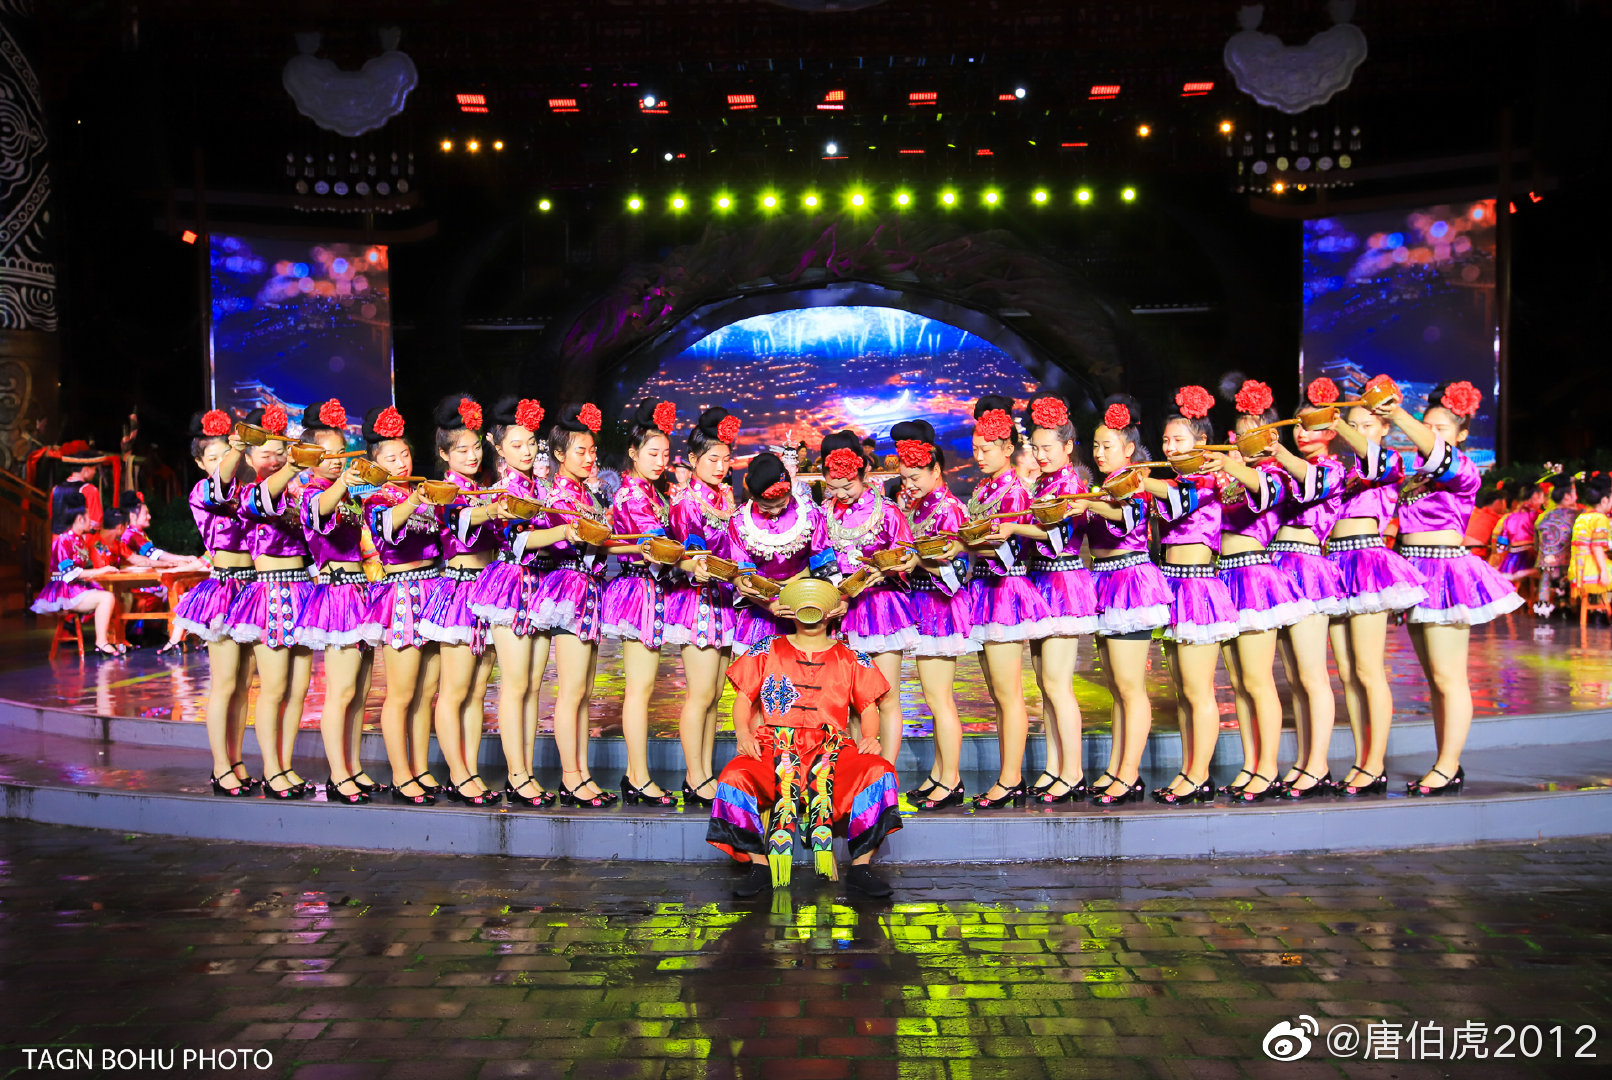 2023《美丽西江》大型歌舞演出玩乐攻略,苗寨特色都融到节目里面了。...【去哪儿攻略】